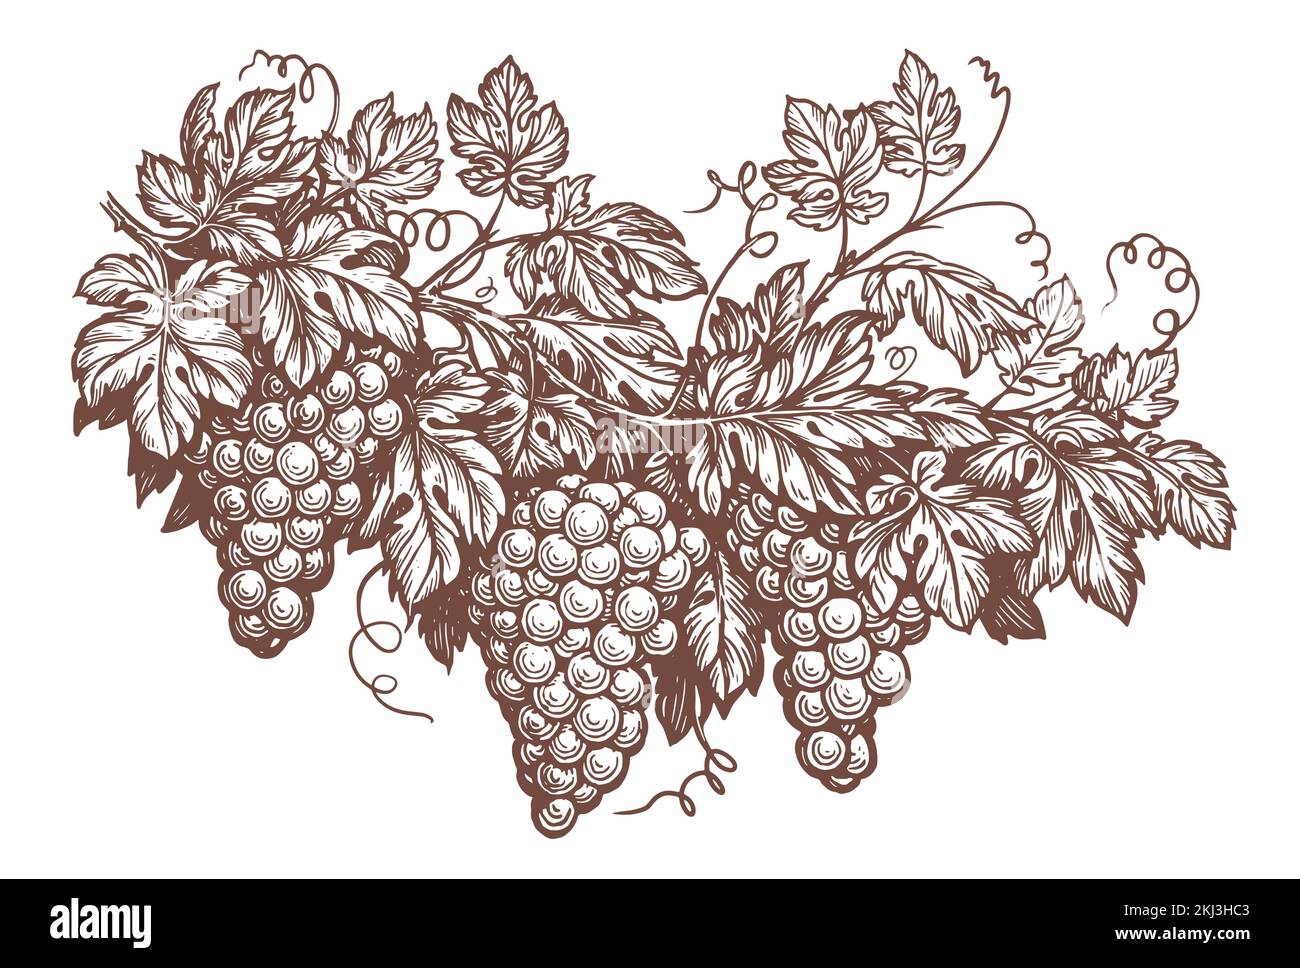 Branche monochrome de vigne de raisin dessinée à la main avec feuilles, illustration vectorielle de gravure. Dessin de concept de vinification vintage Illustration de Vecteur